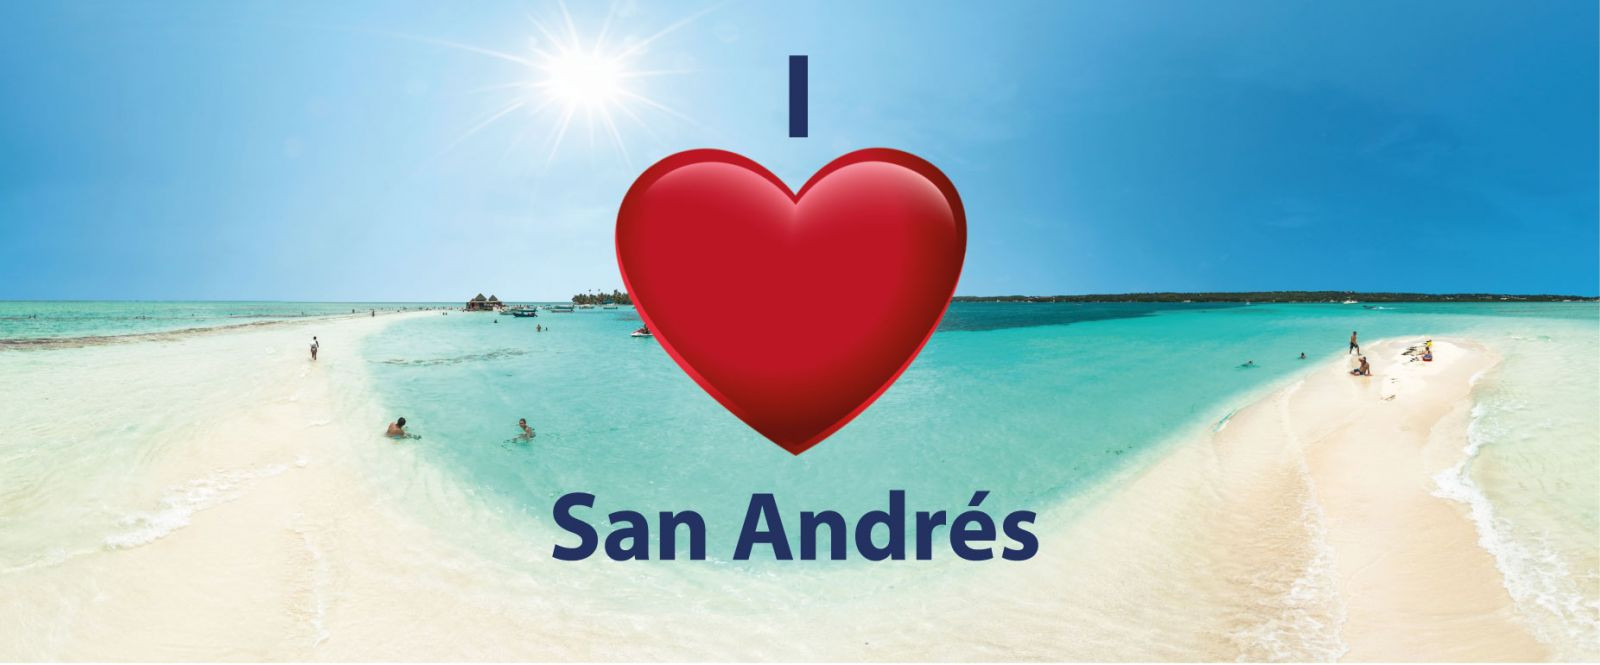 HK0RMR San Andres Island DX News 18 February 2021